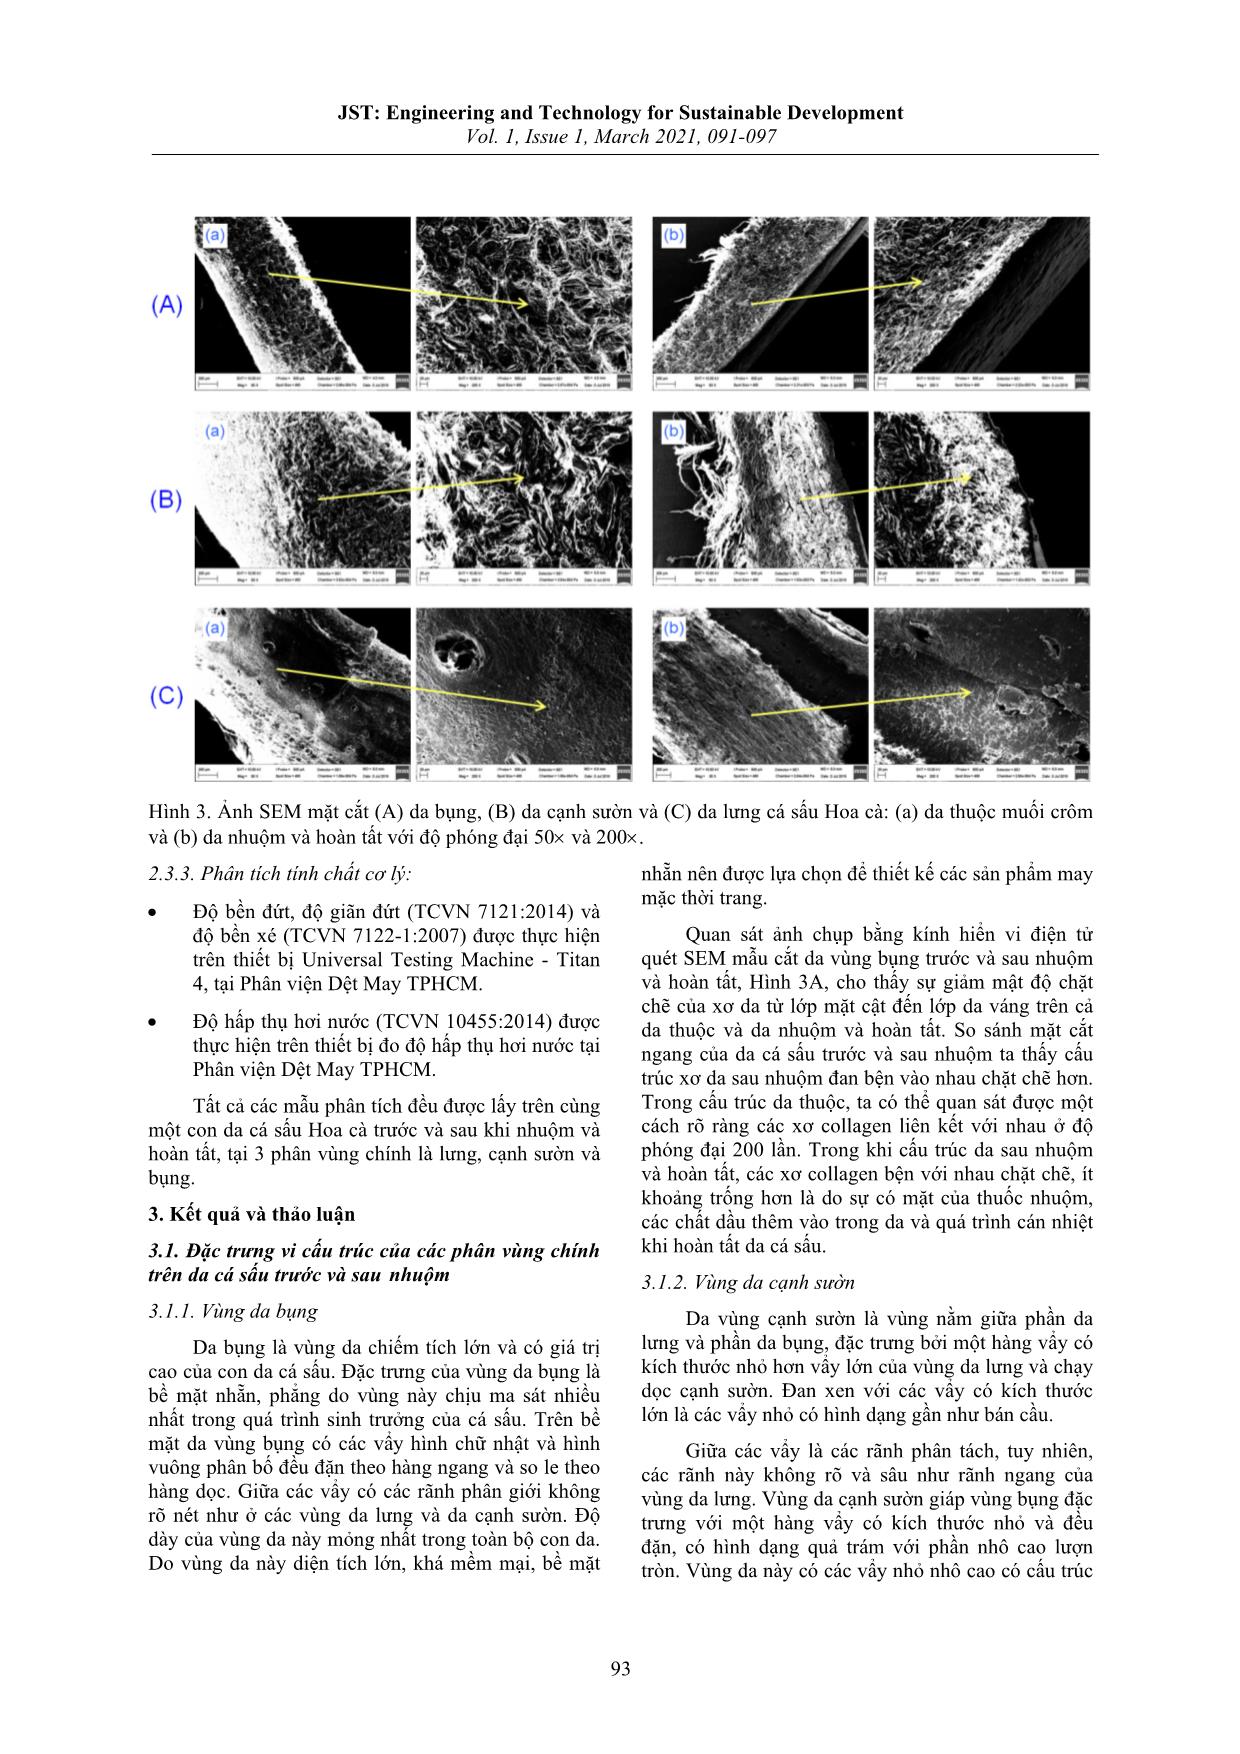 Nghiên cứu sự biến đổi màu sắc, vi cấu trúc và các tính chất cơ lý của da cá sấu Hoa cà trước và sau khi nhuộm trang 3